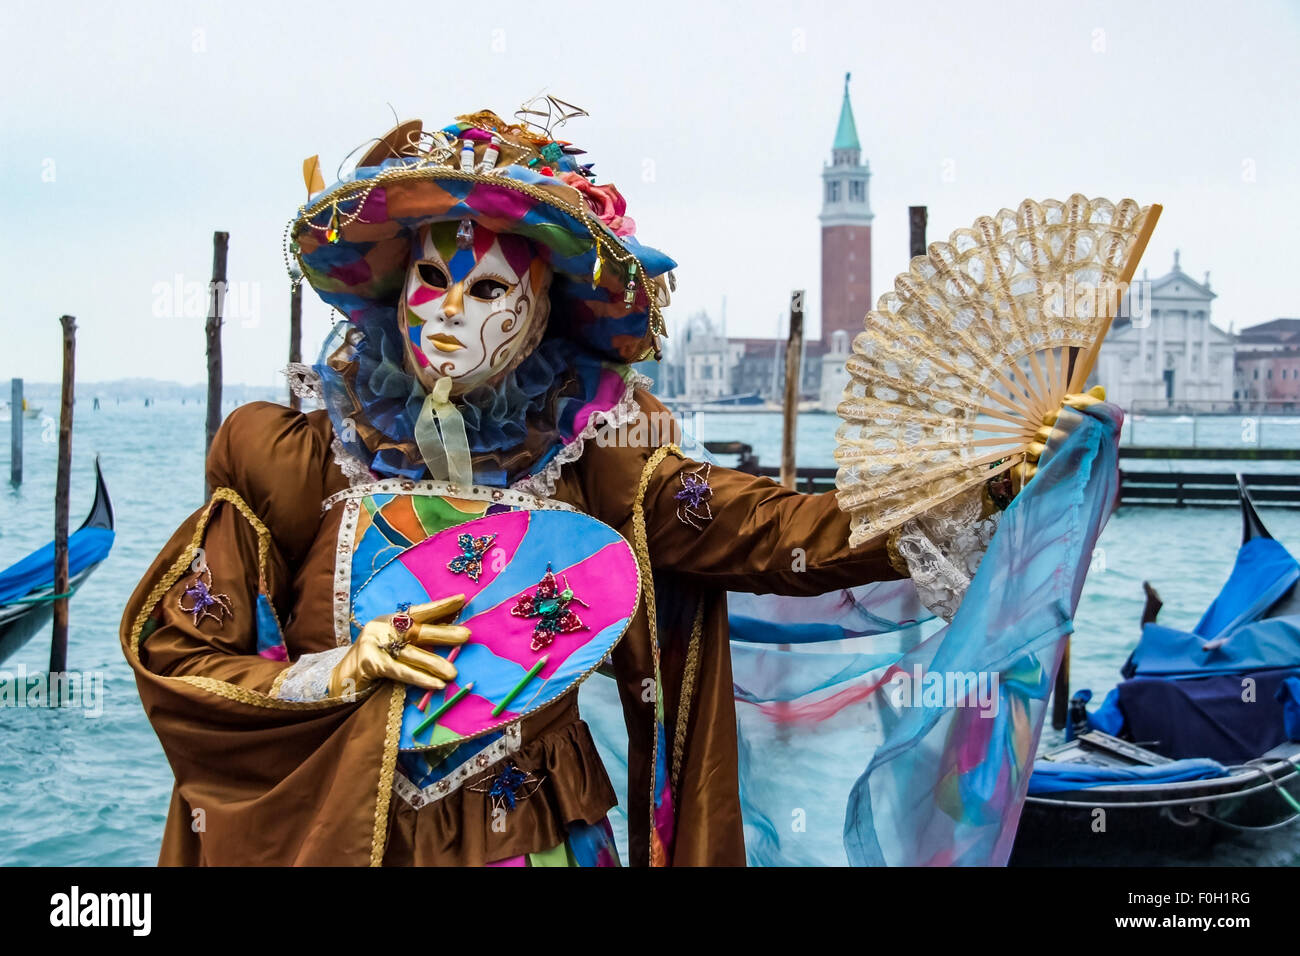 Personne non identifiée avec masque de carnaval de Venise à Venise, Italie. Banque D'Images